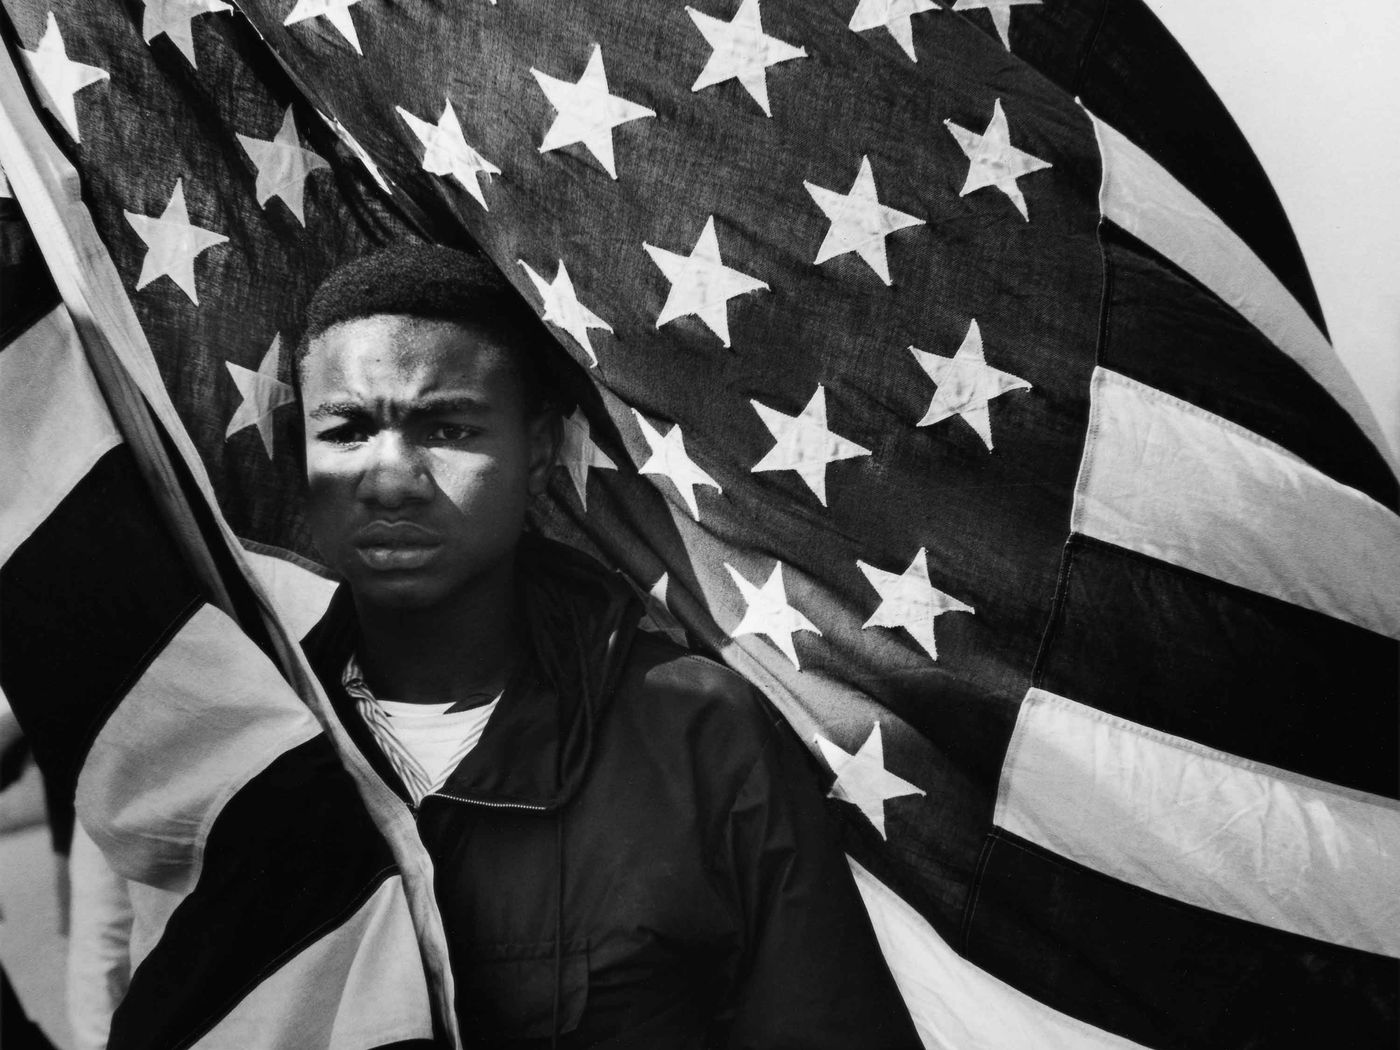 Lewis "Big June" Marshall, Selma, 1965